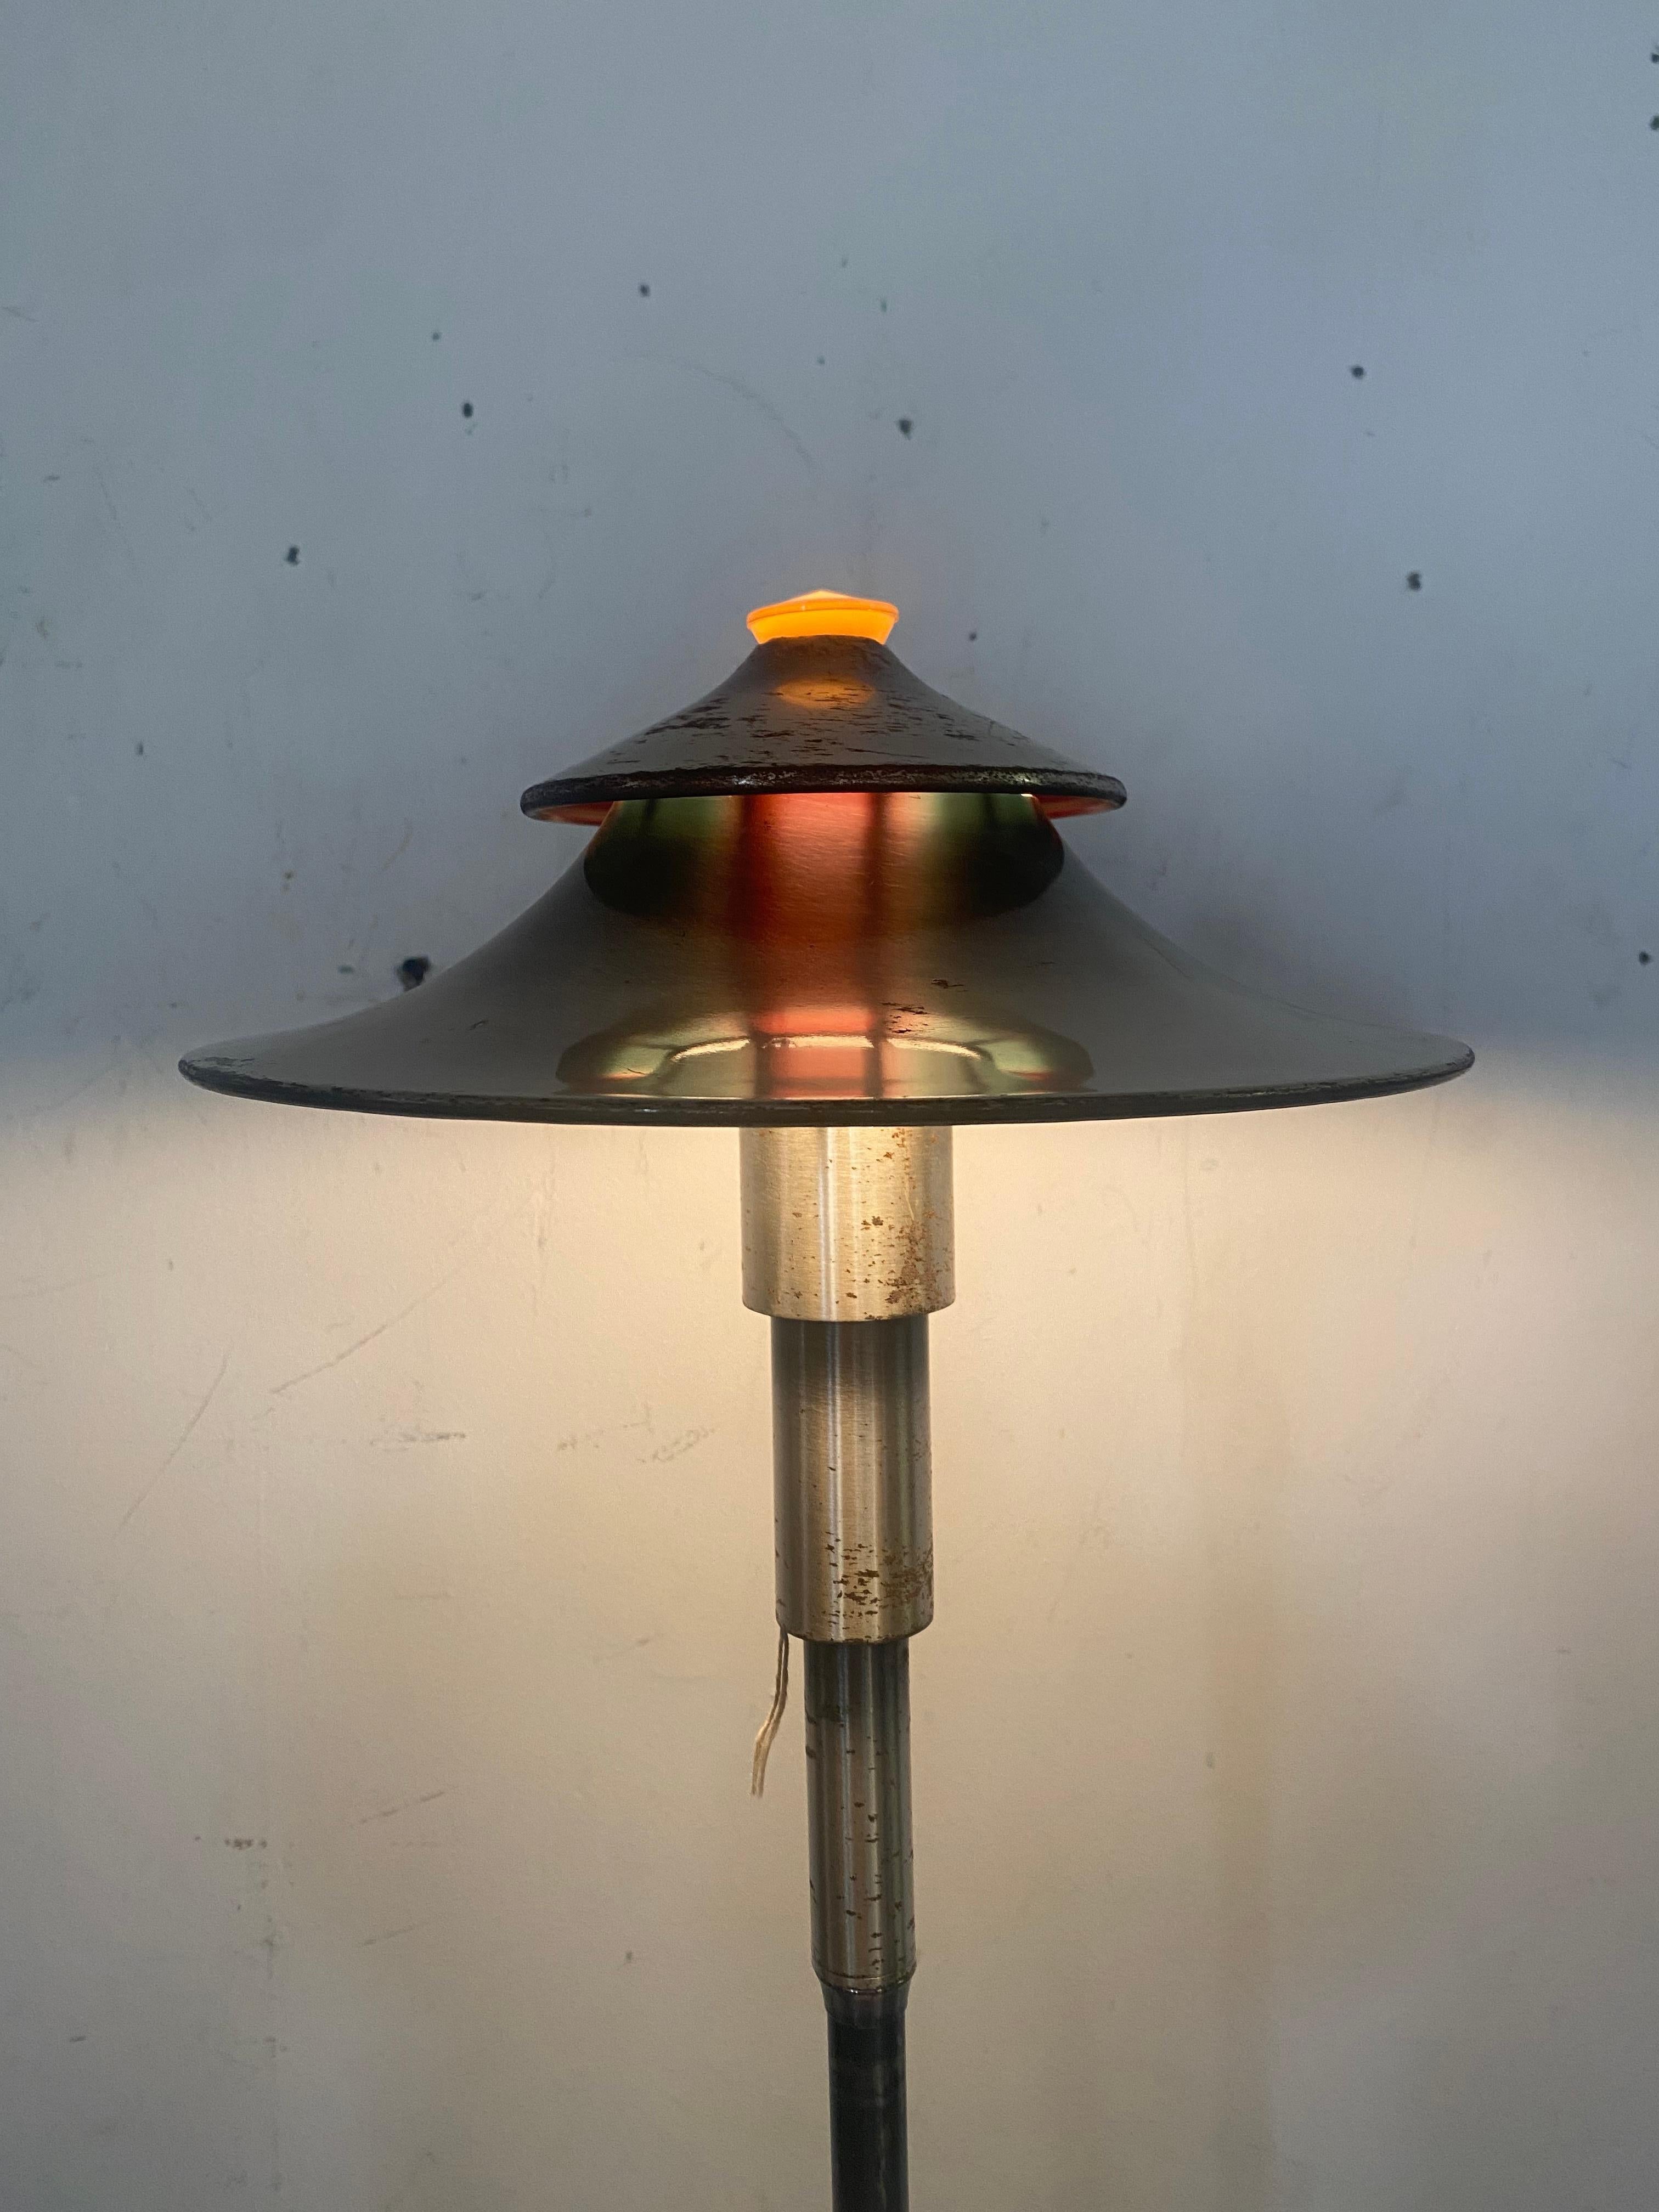 Art Deco Modernist Table or Floor Lamp by Leroy C. Doane for Miller 1